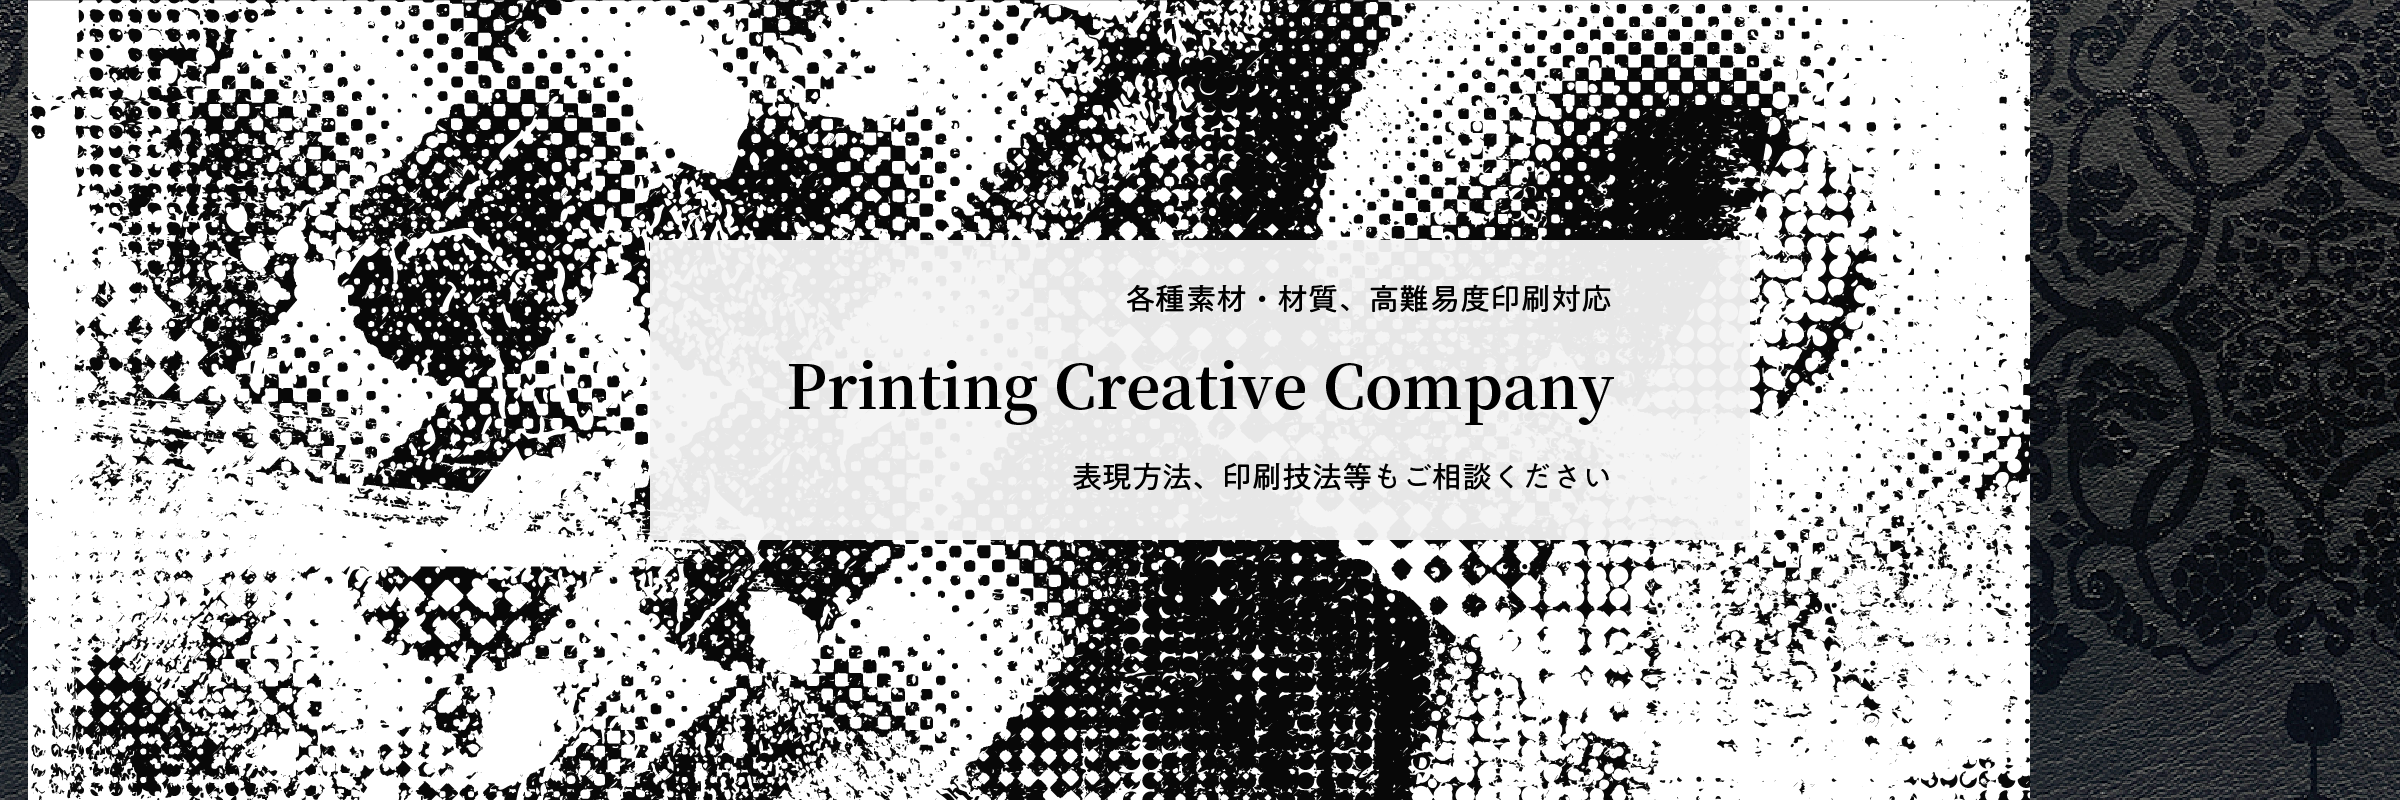 各種素材・材質、高難易度印刷対応 Printing Creative Company 表現方法、印刷技法等もご相談ください